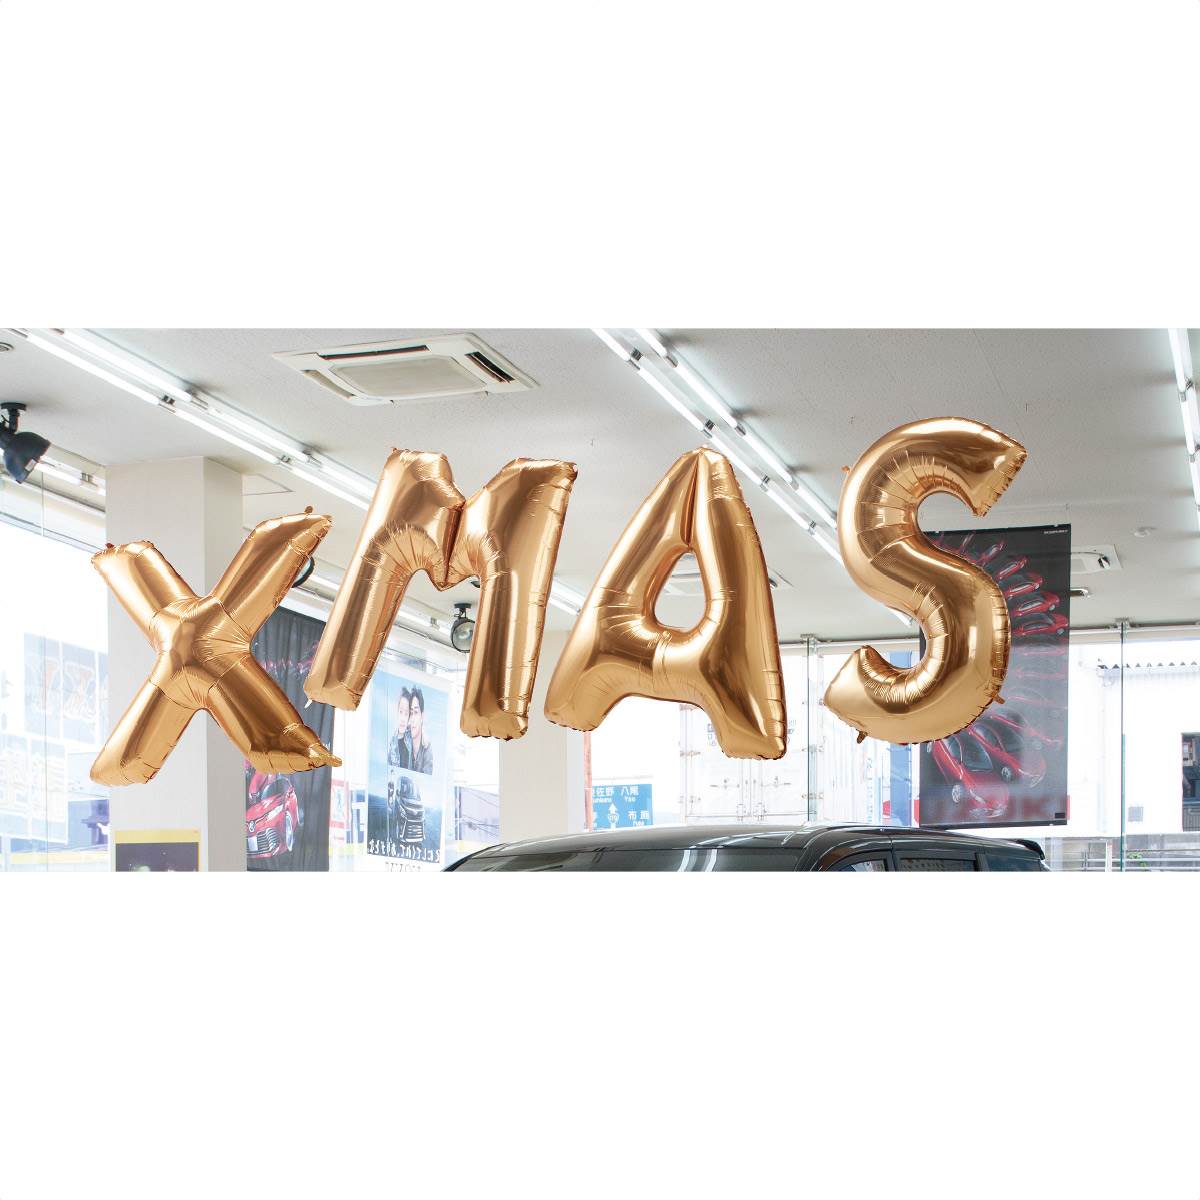 レターバルーンセット Xmas クリスマス ディスプレイ 店舗装飾 クリスマス飾り 吊るし飾り 天井 エントランス ディスプレイ 通販 ストア エキスプレス